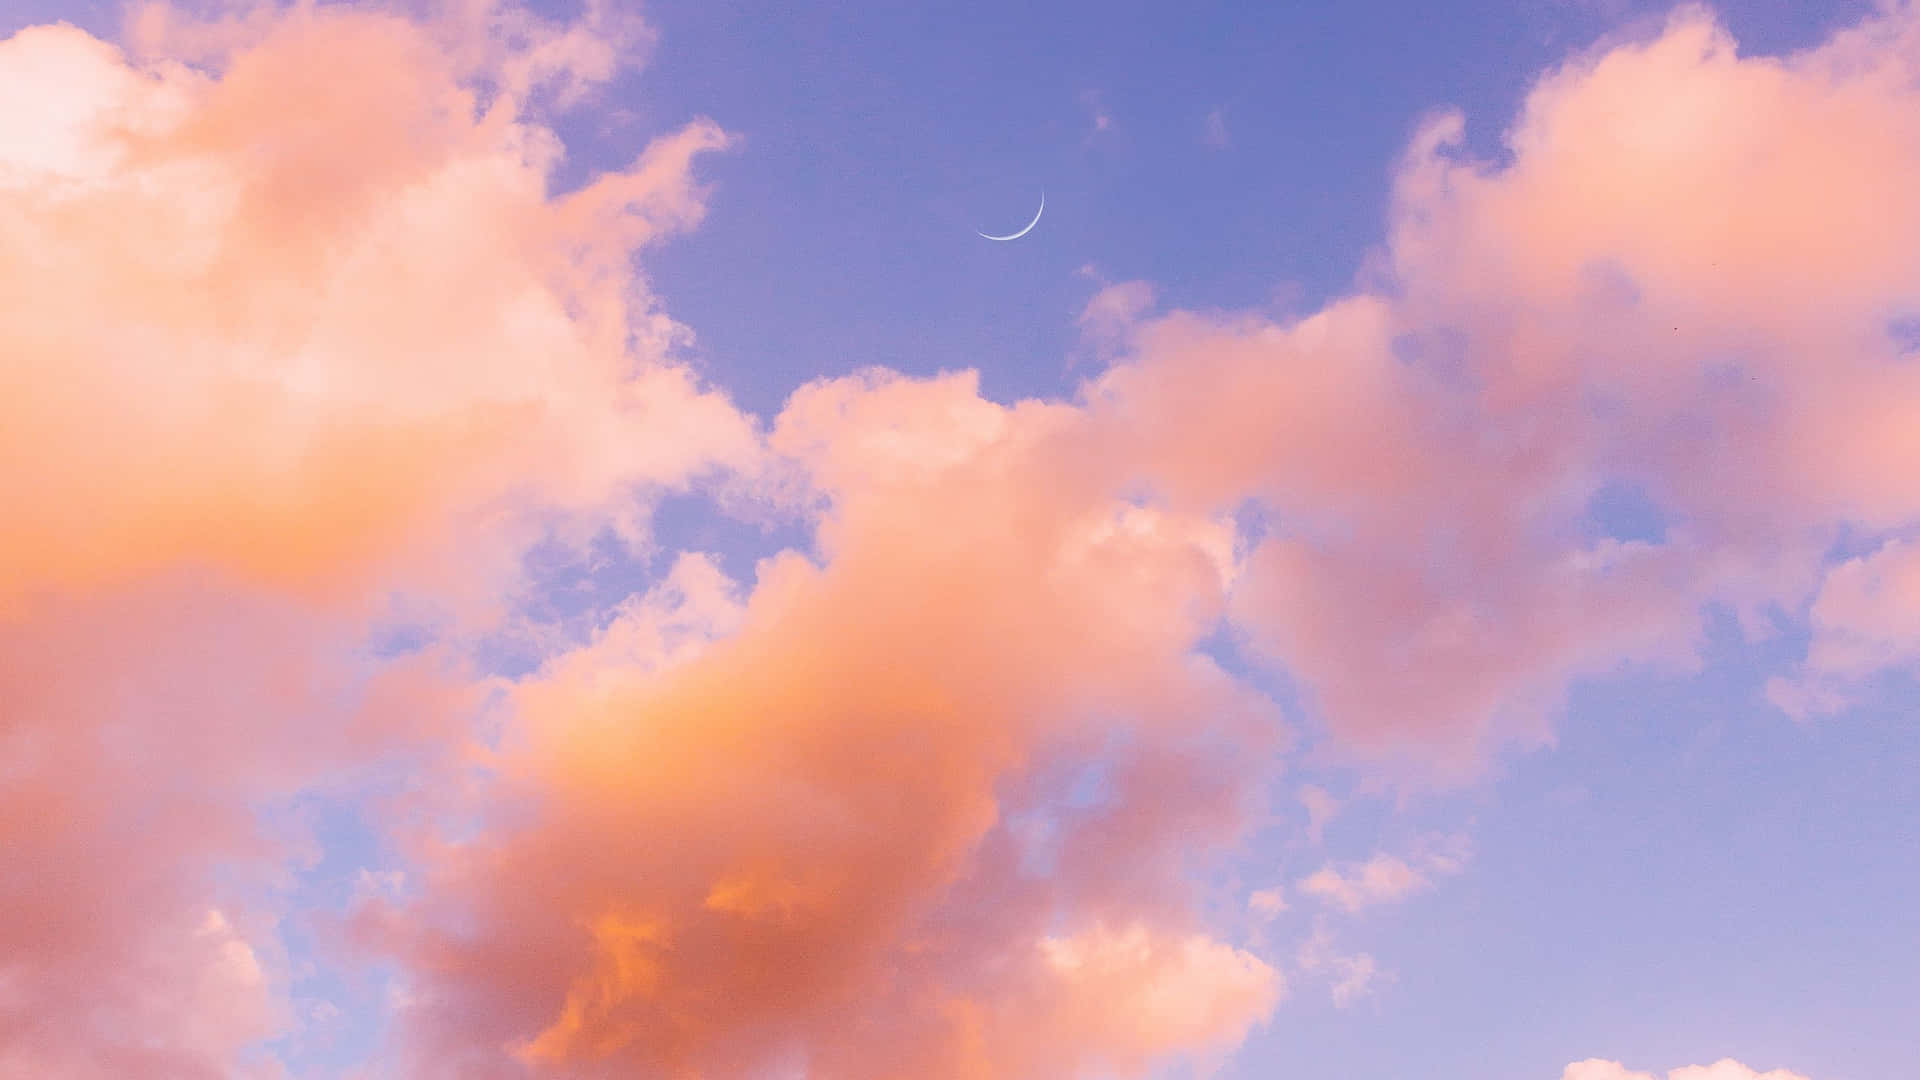 Meravigliosevedute Delle Nuvole In Diverse Sfumature Di Blu, Rosa E Giallo